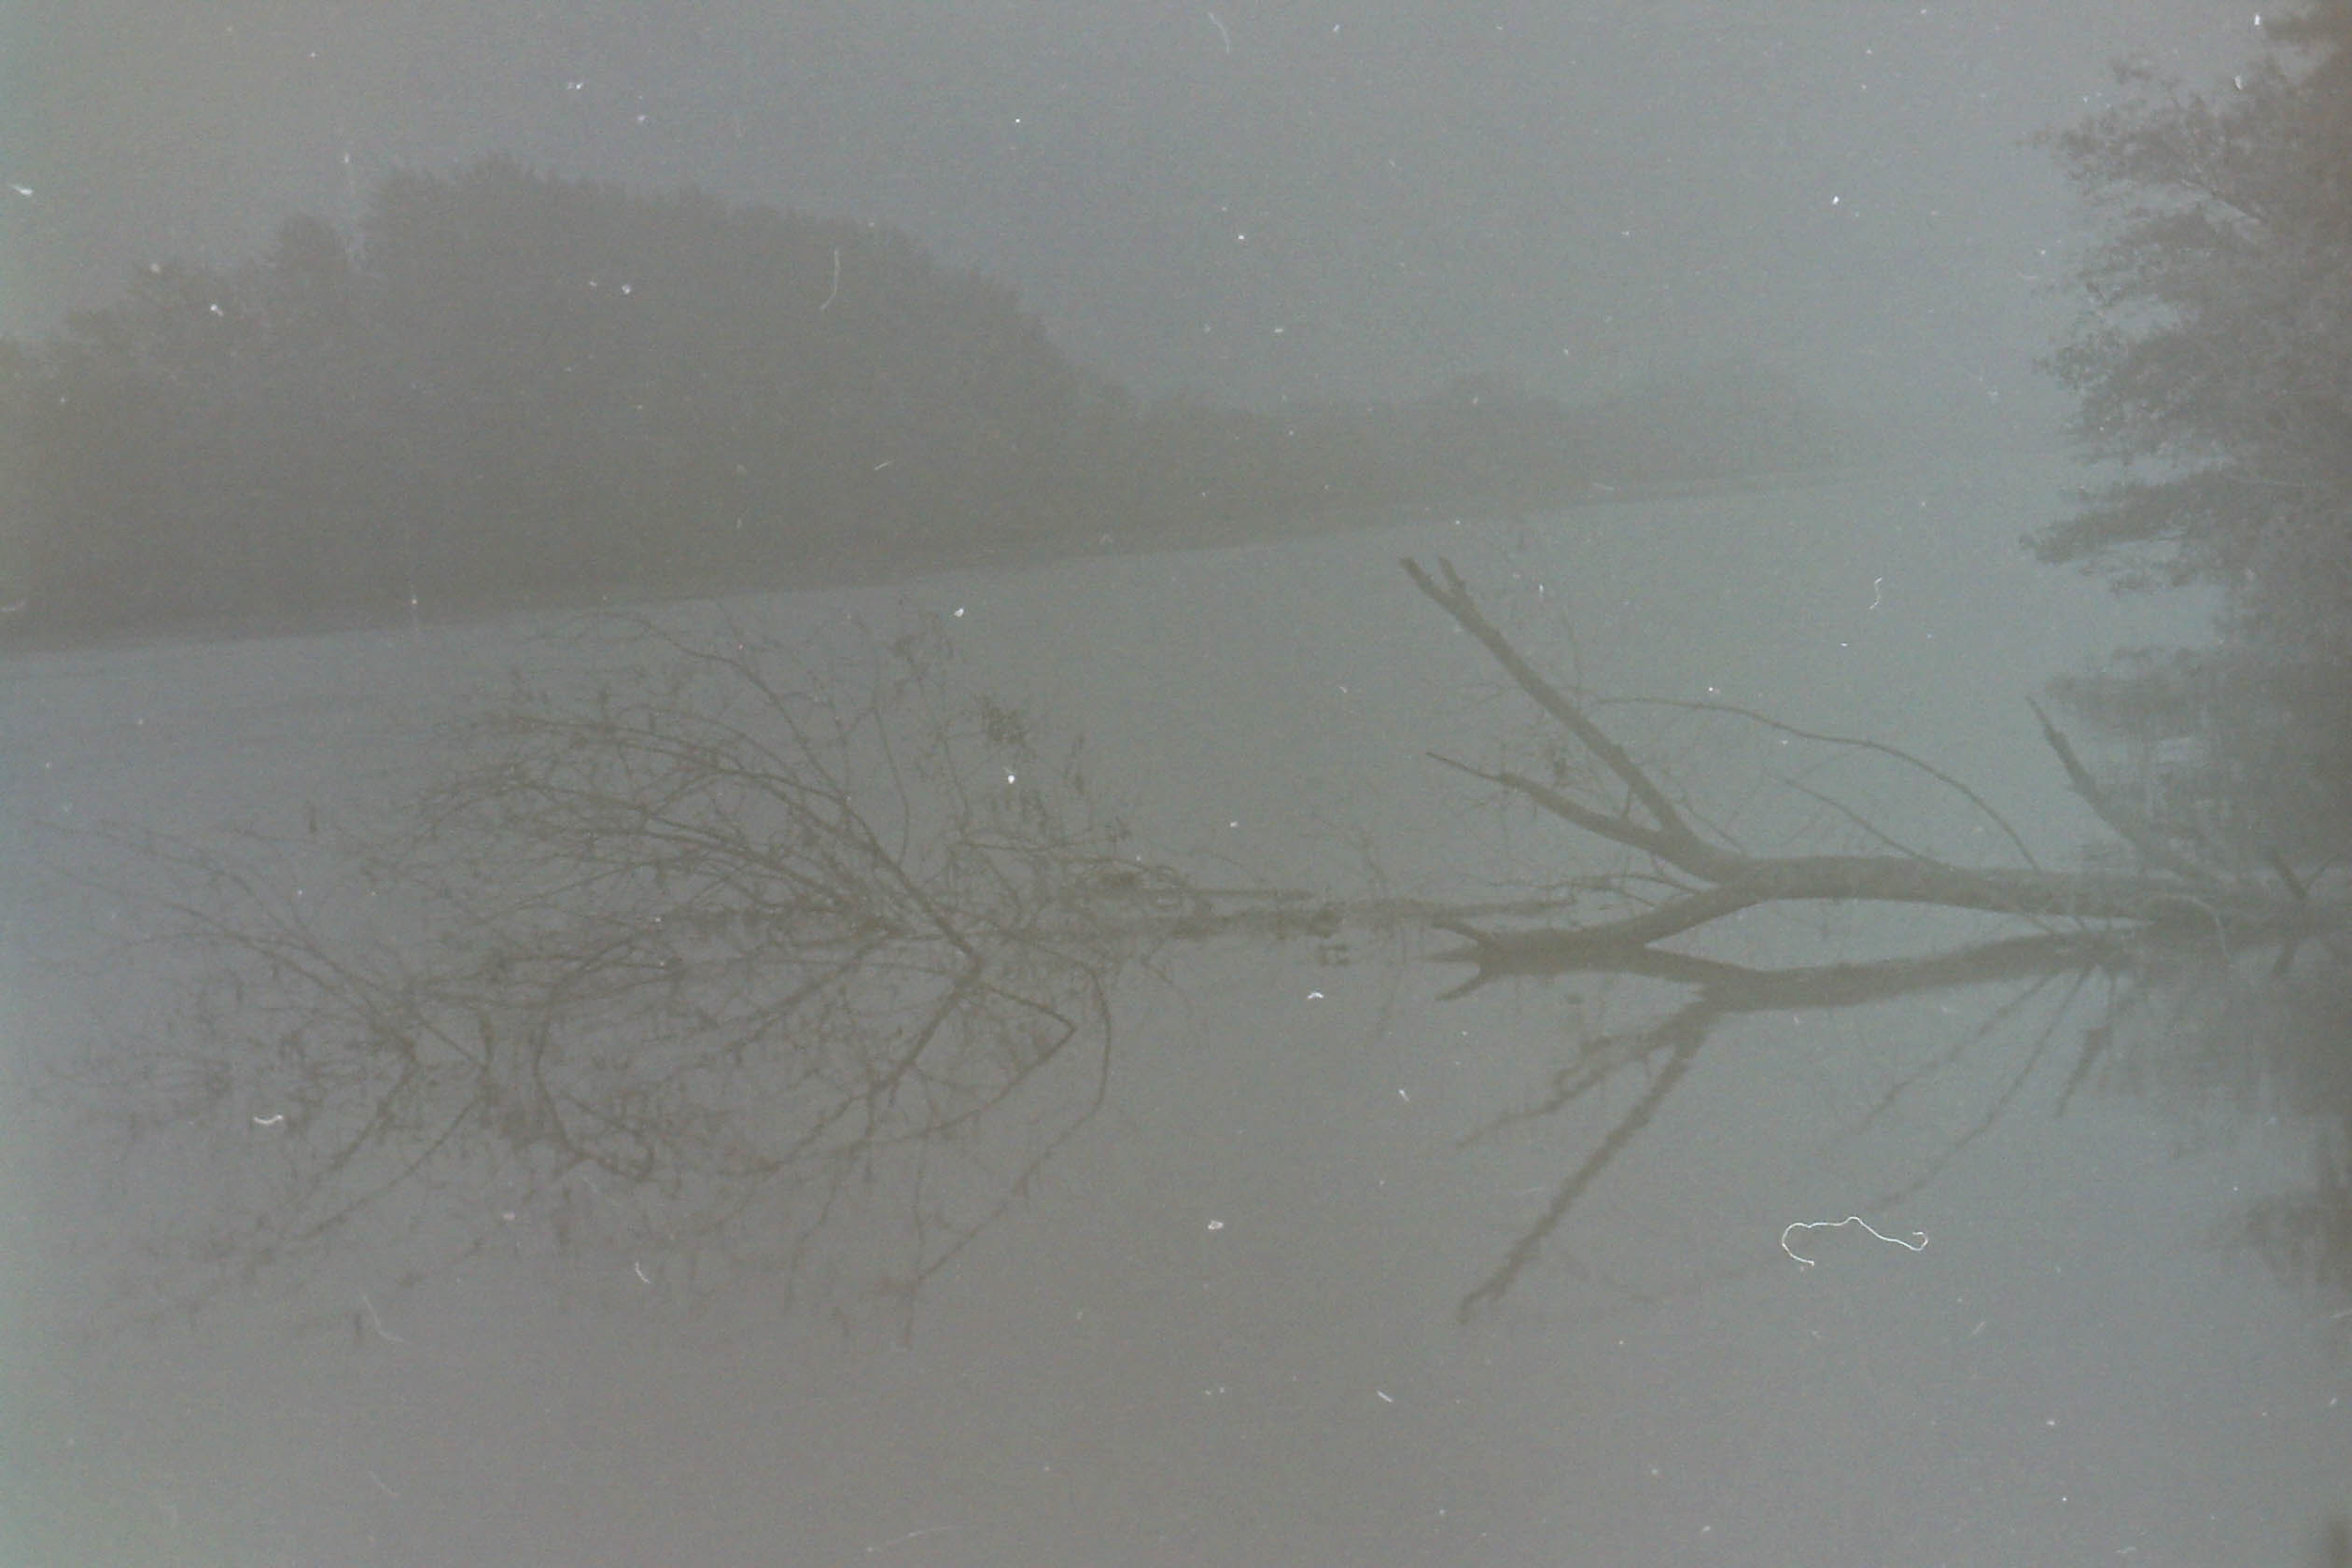 arbre mort et son reflet couchés sur l'eau dans la brume